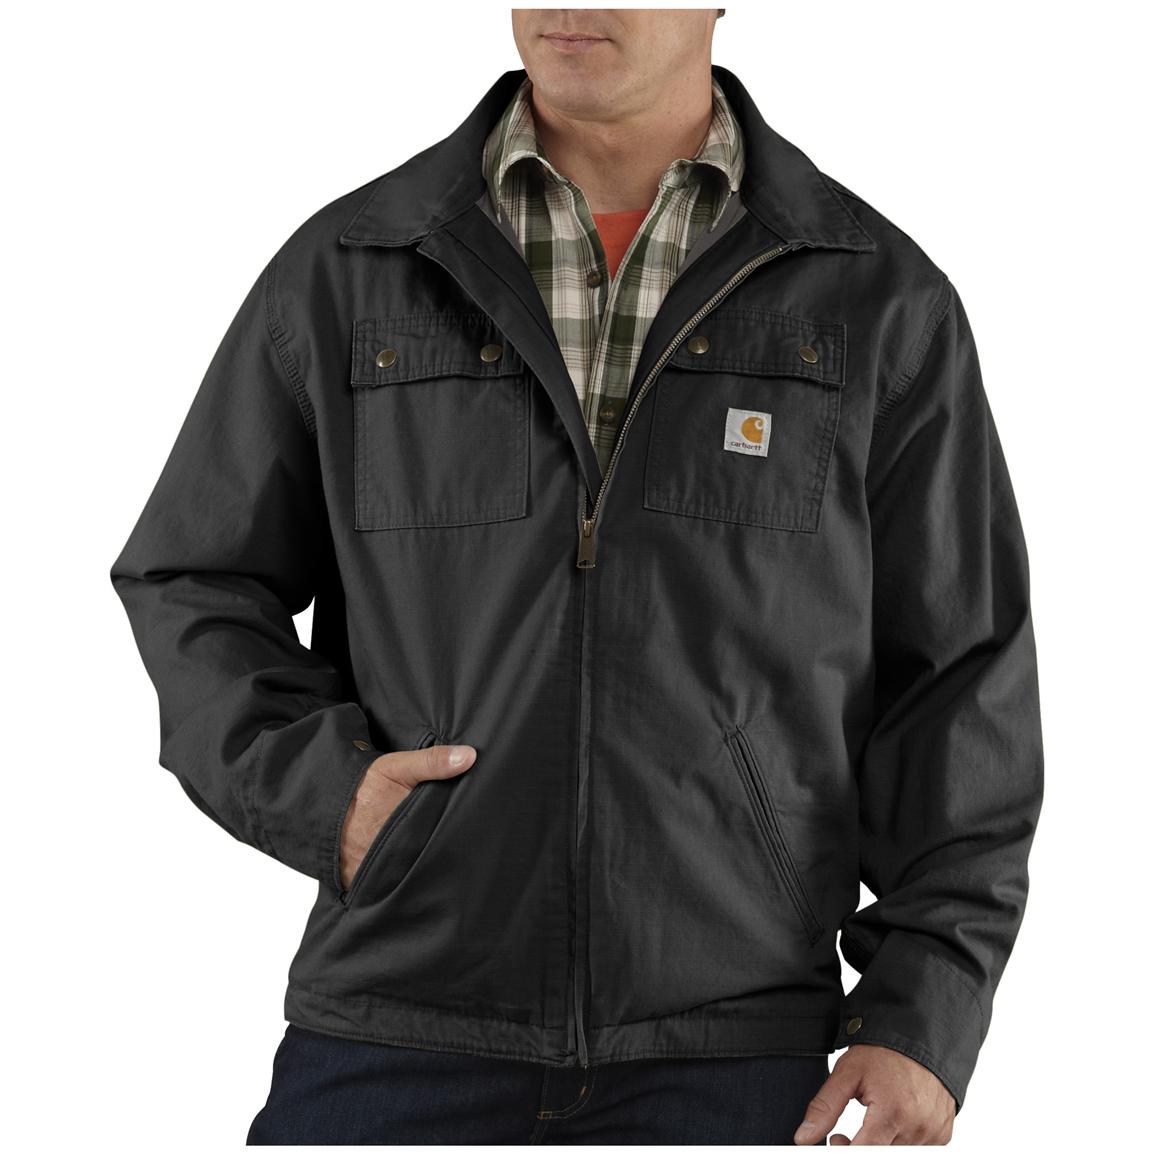 men's outdoor work jackets